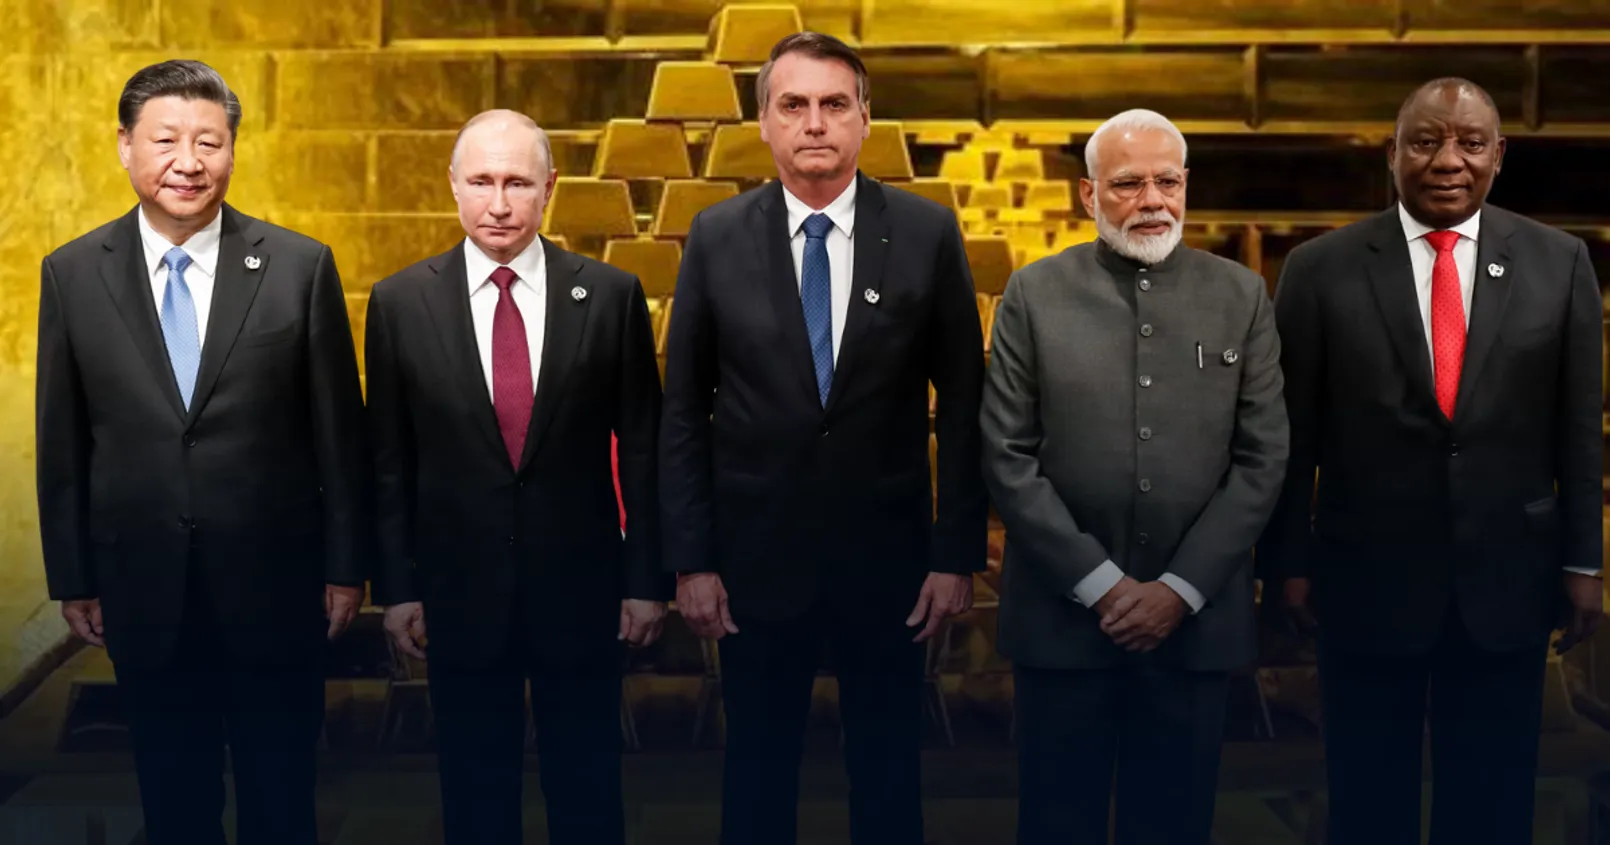 กลุ่มประเทศ BRICS เริ่มซื้อ 'ทองคำ' เป็นจำนวนมาก